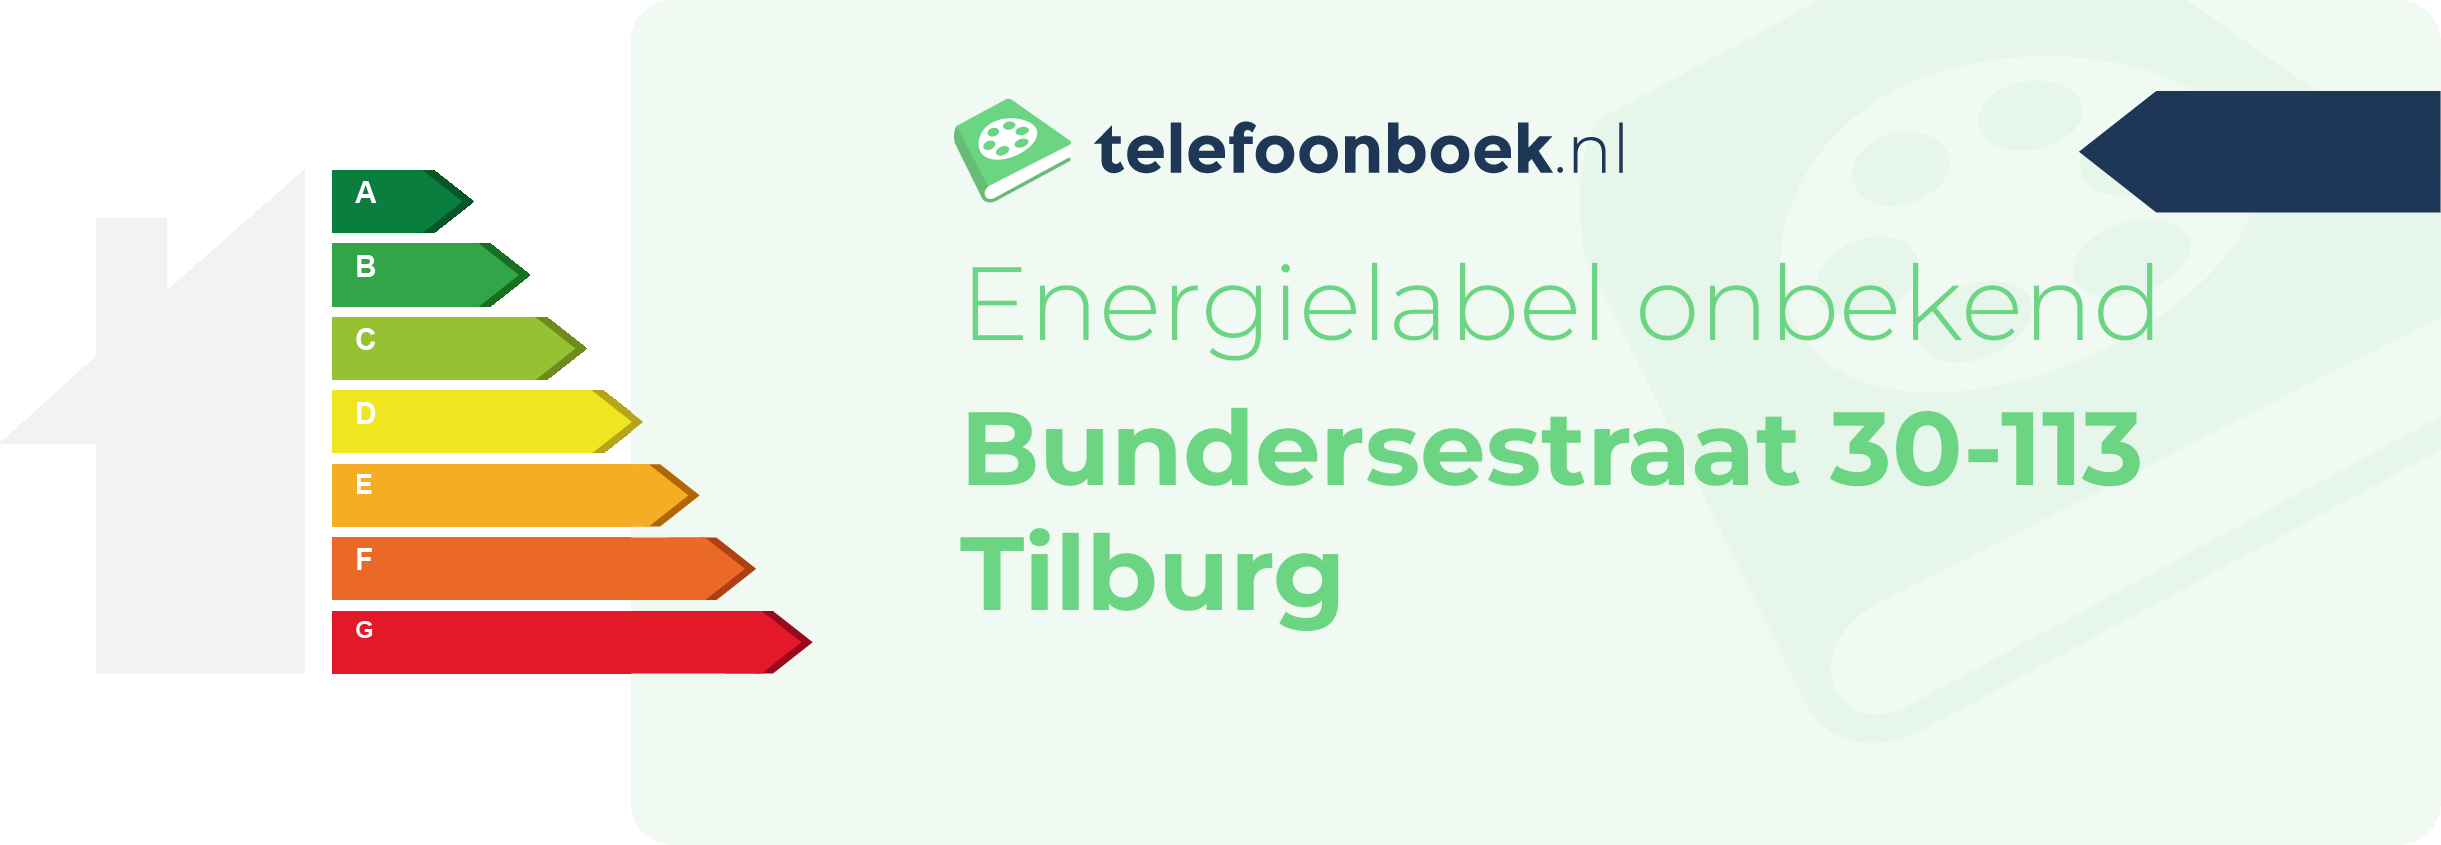 Energielabel Bundersestraat 30-113 Tilburg